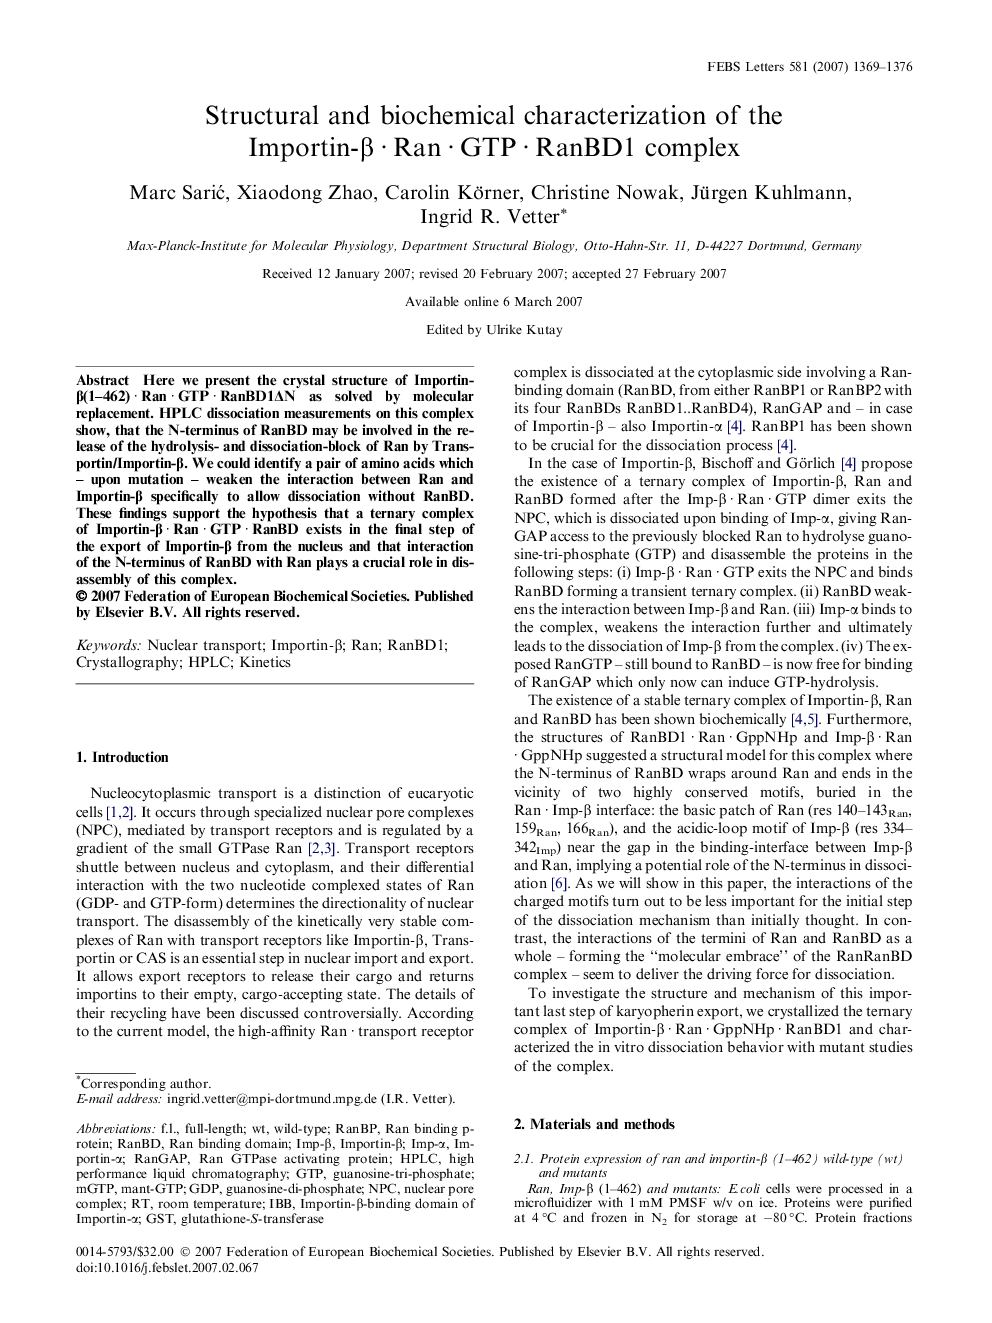 Structural and biochemical characterization of the Importin-Î²Â Â·Â RanÂ Â·Â GTPÂ Â·Â RanBD1 complex